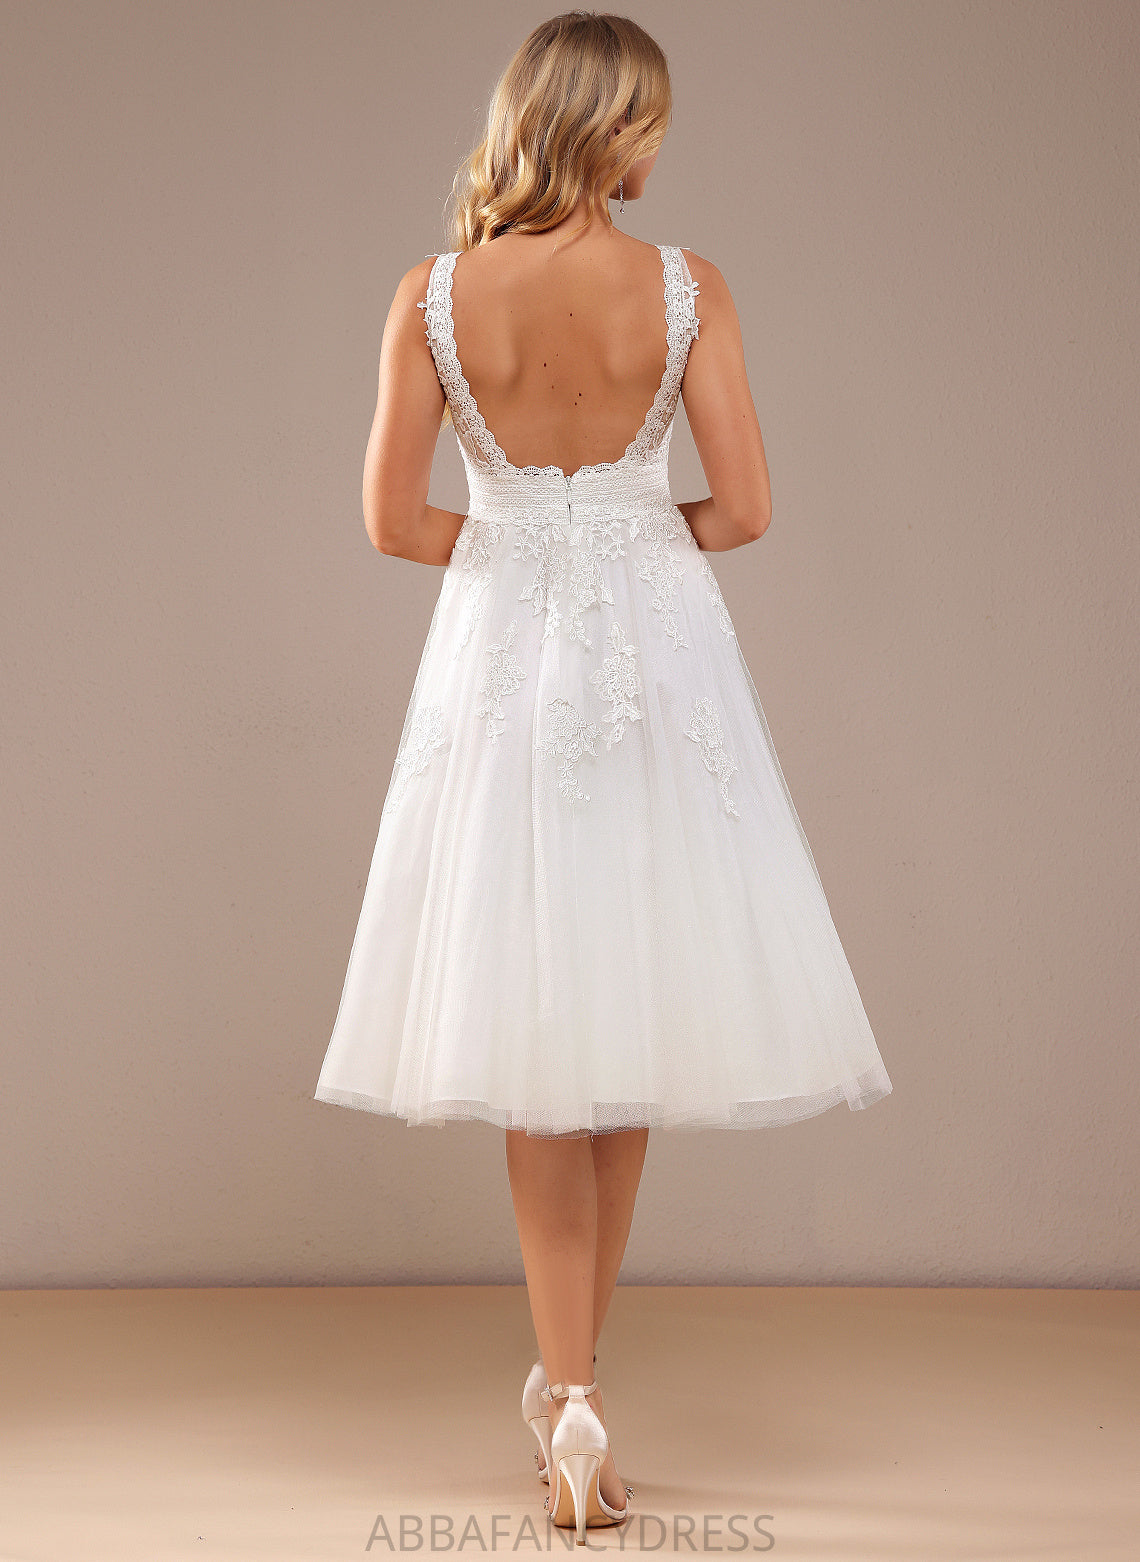 Knee-Length Lace Wedding Dresses Wedding Brooke A-Line Dress V-neck Tulle